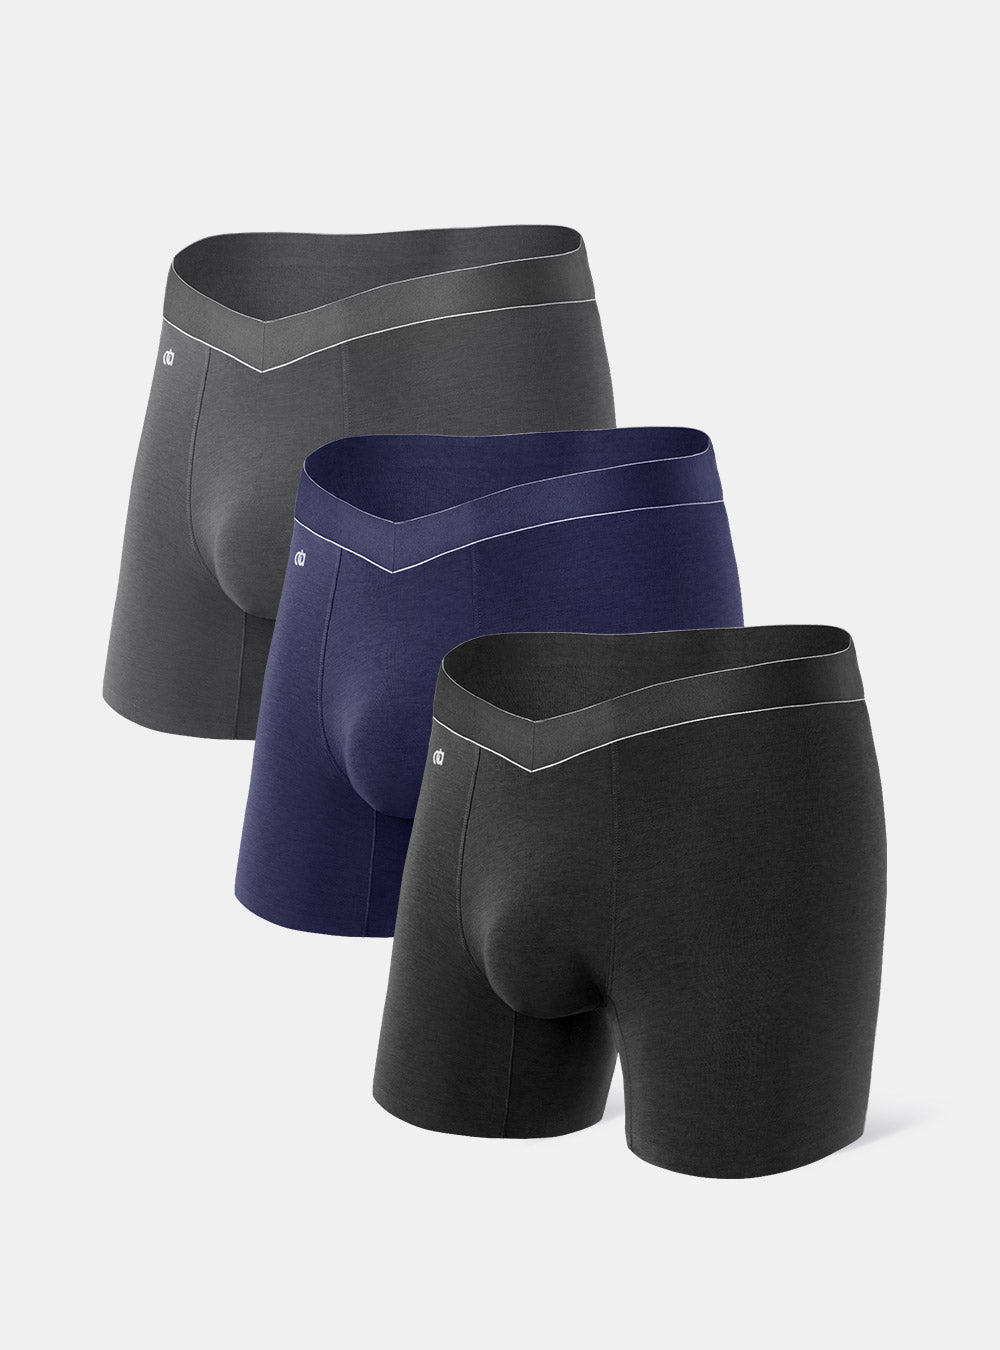 Sky Boarder Boxer Brief in Micro Modal – Nth Degree Underwear